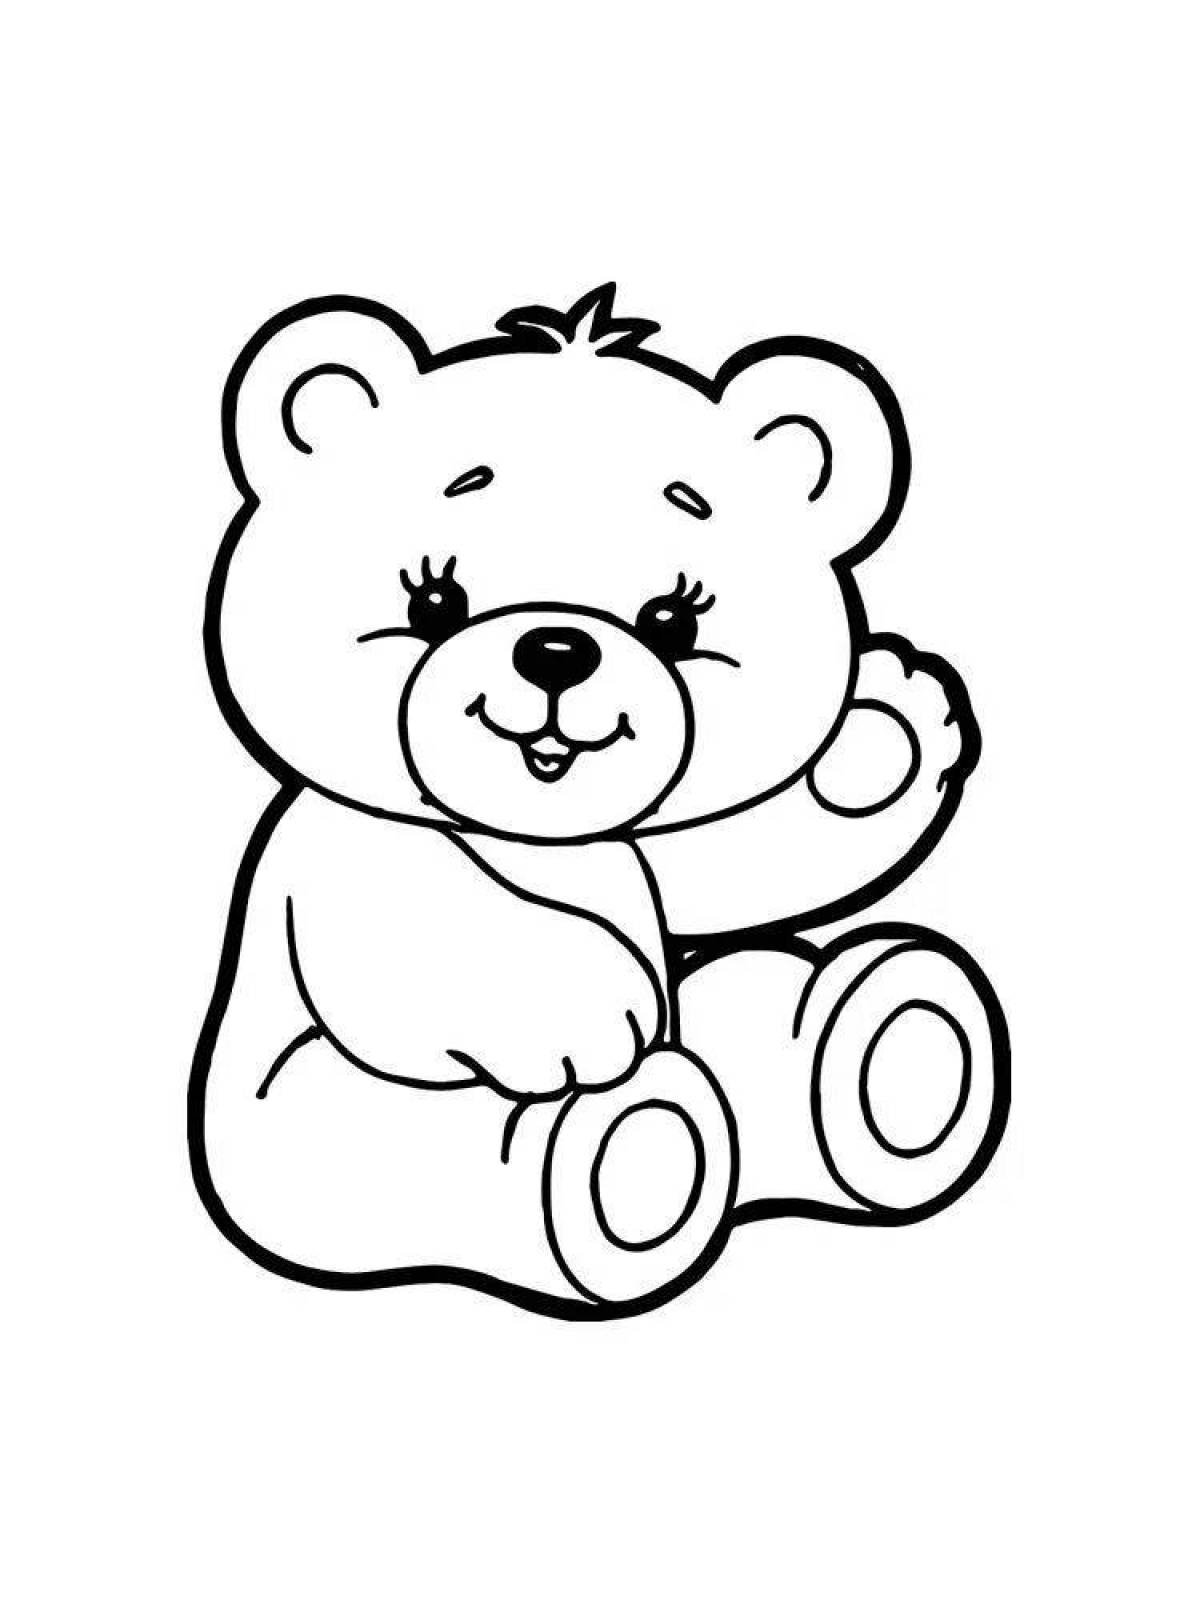 Распечатка медведя. Раскраска. Медвежонок. Медведь раскраска. Медвежонок раскраска для детей. Мишка для раскрашивания для детей.